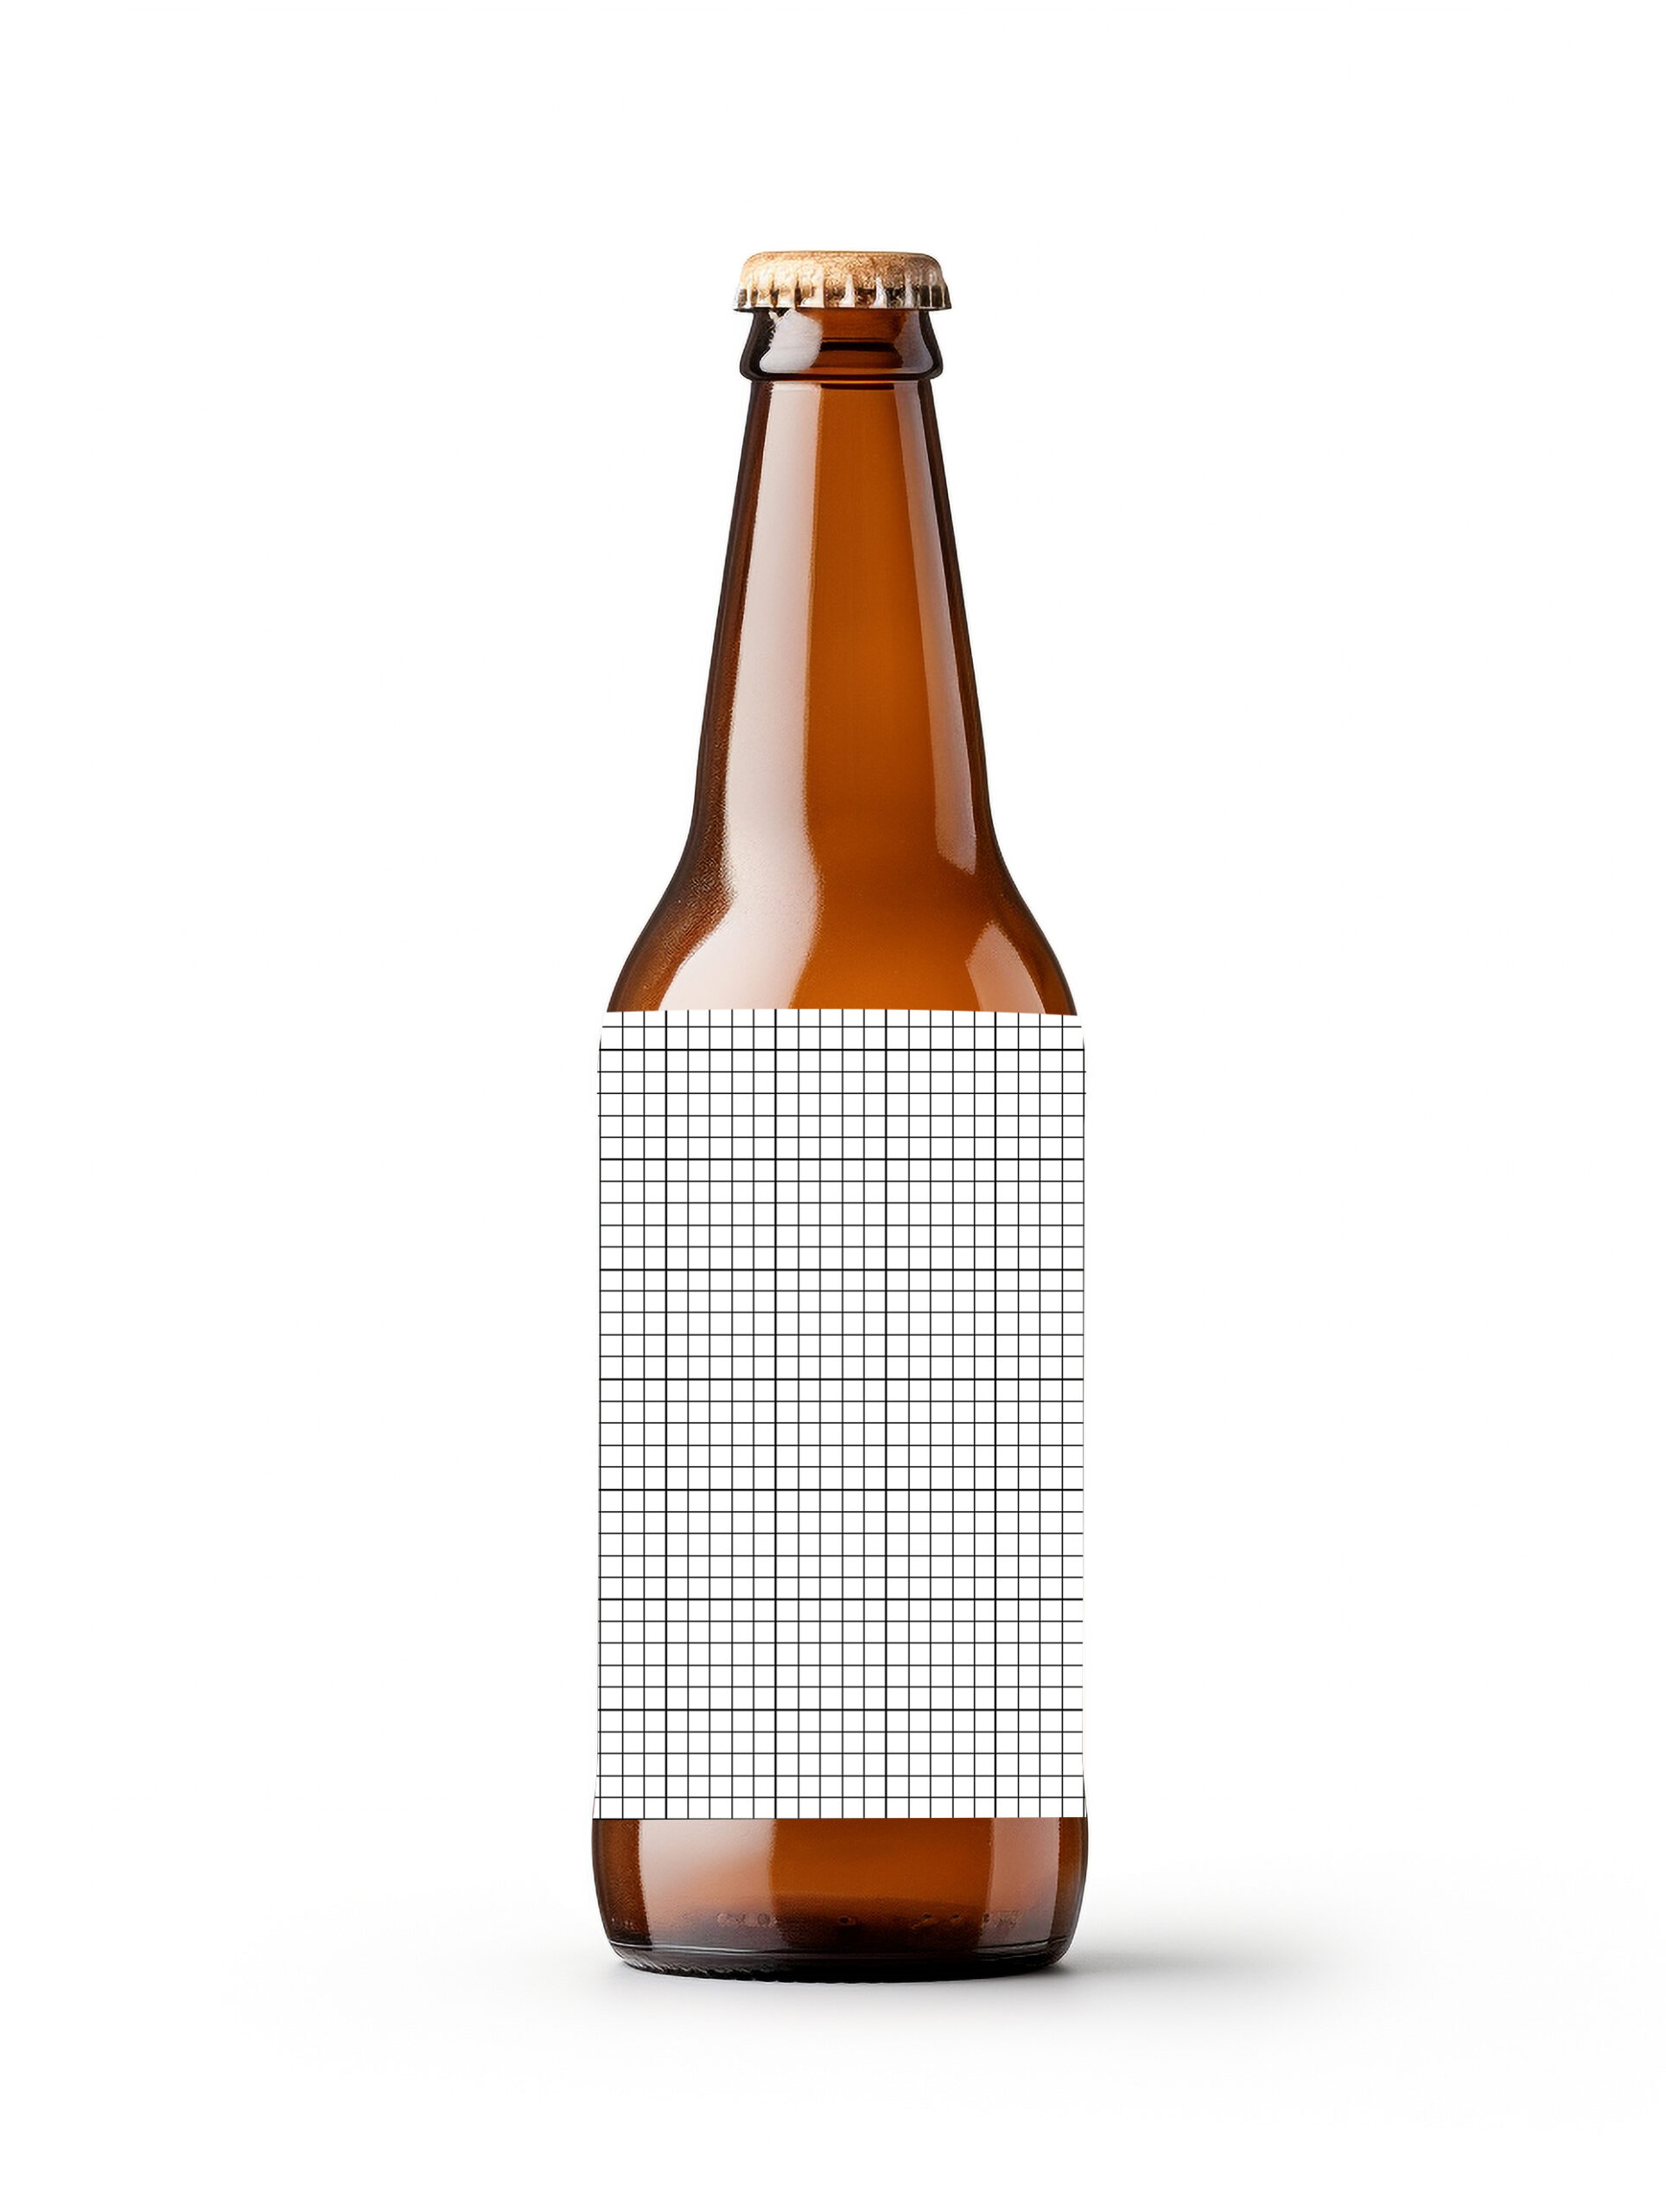 Free Download Beer bottle label mockup PSD